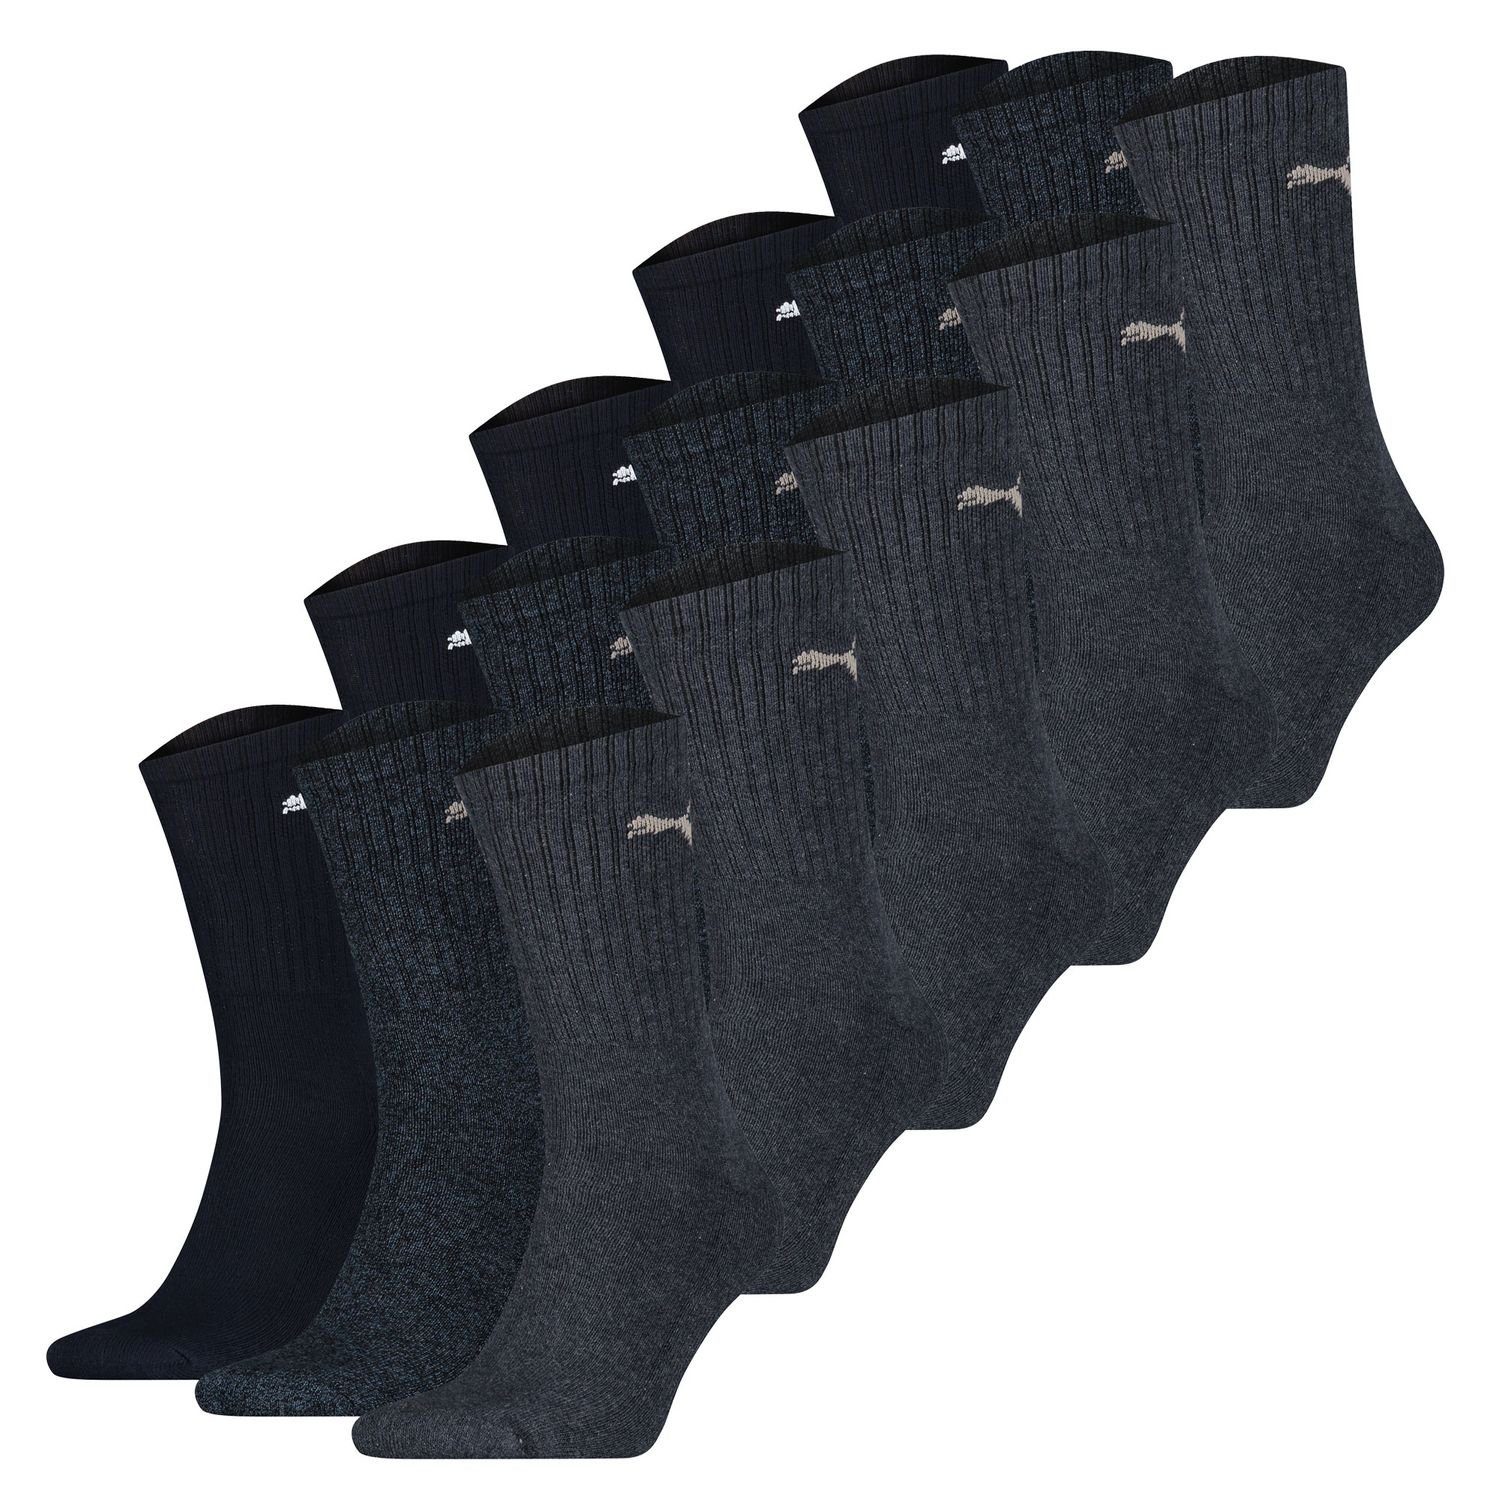 PUMA BODYWEAR Socken Tennissocken der Klassiker in vielen Farben 15 Paar